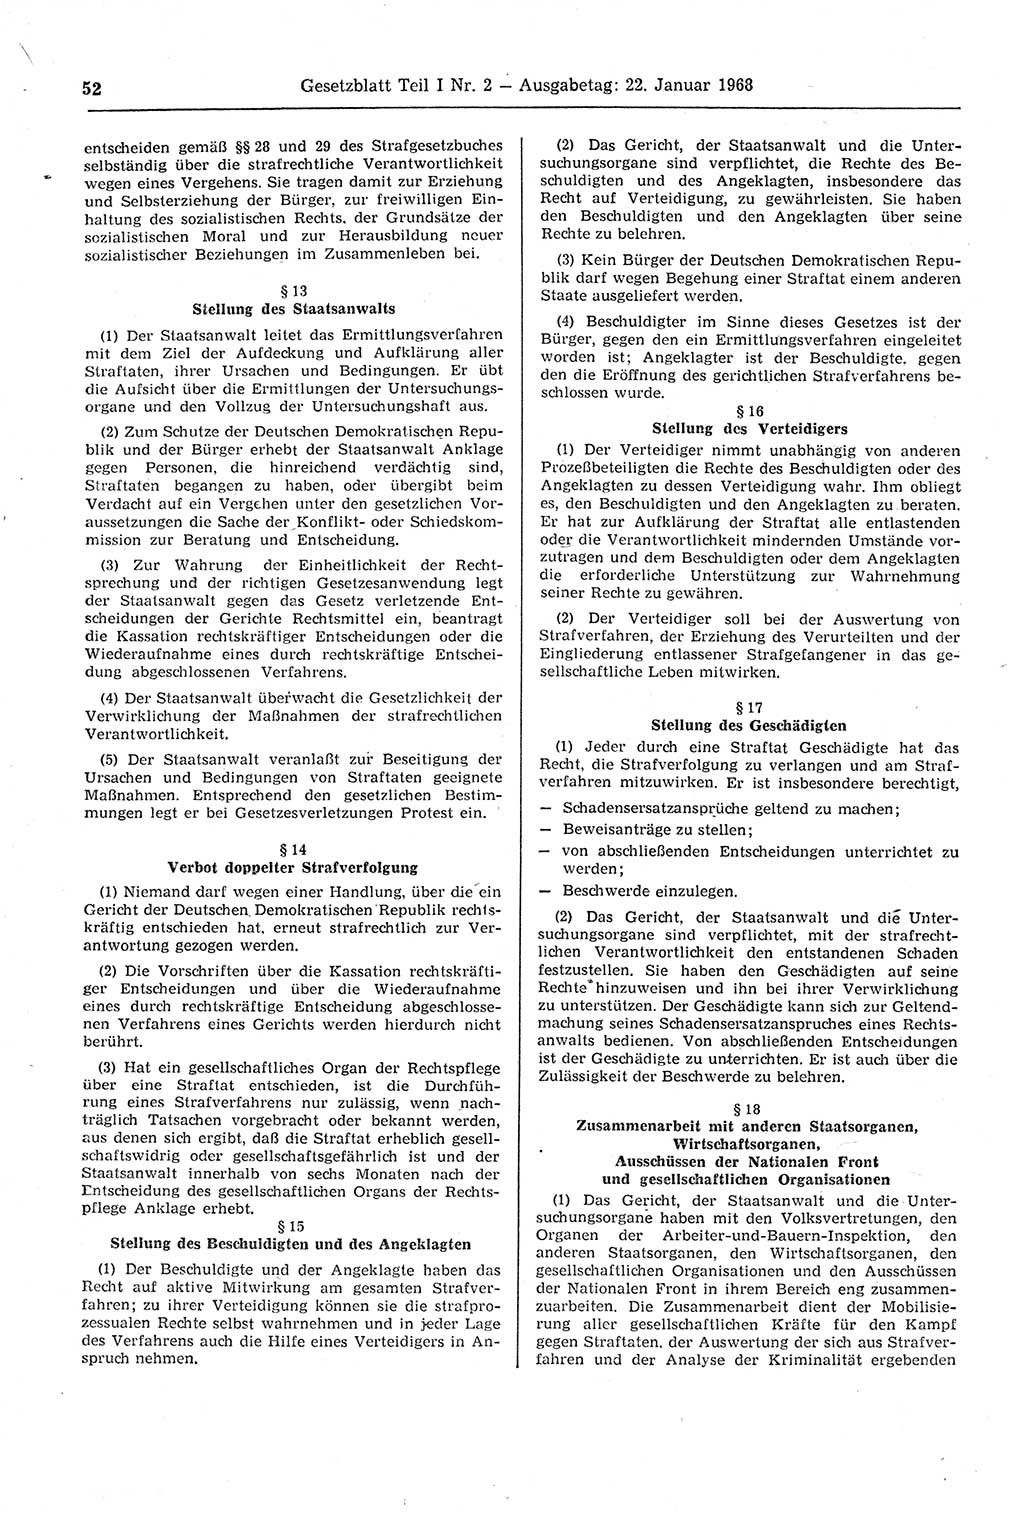 Gesetzblatt (GBl.) der Deutschen Demokratischen Republik (DDR) Teil Ⅰ 1968, Seite 52 (GBl. DDR Ⅰ 1968, S. 52)